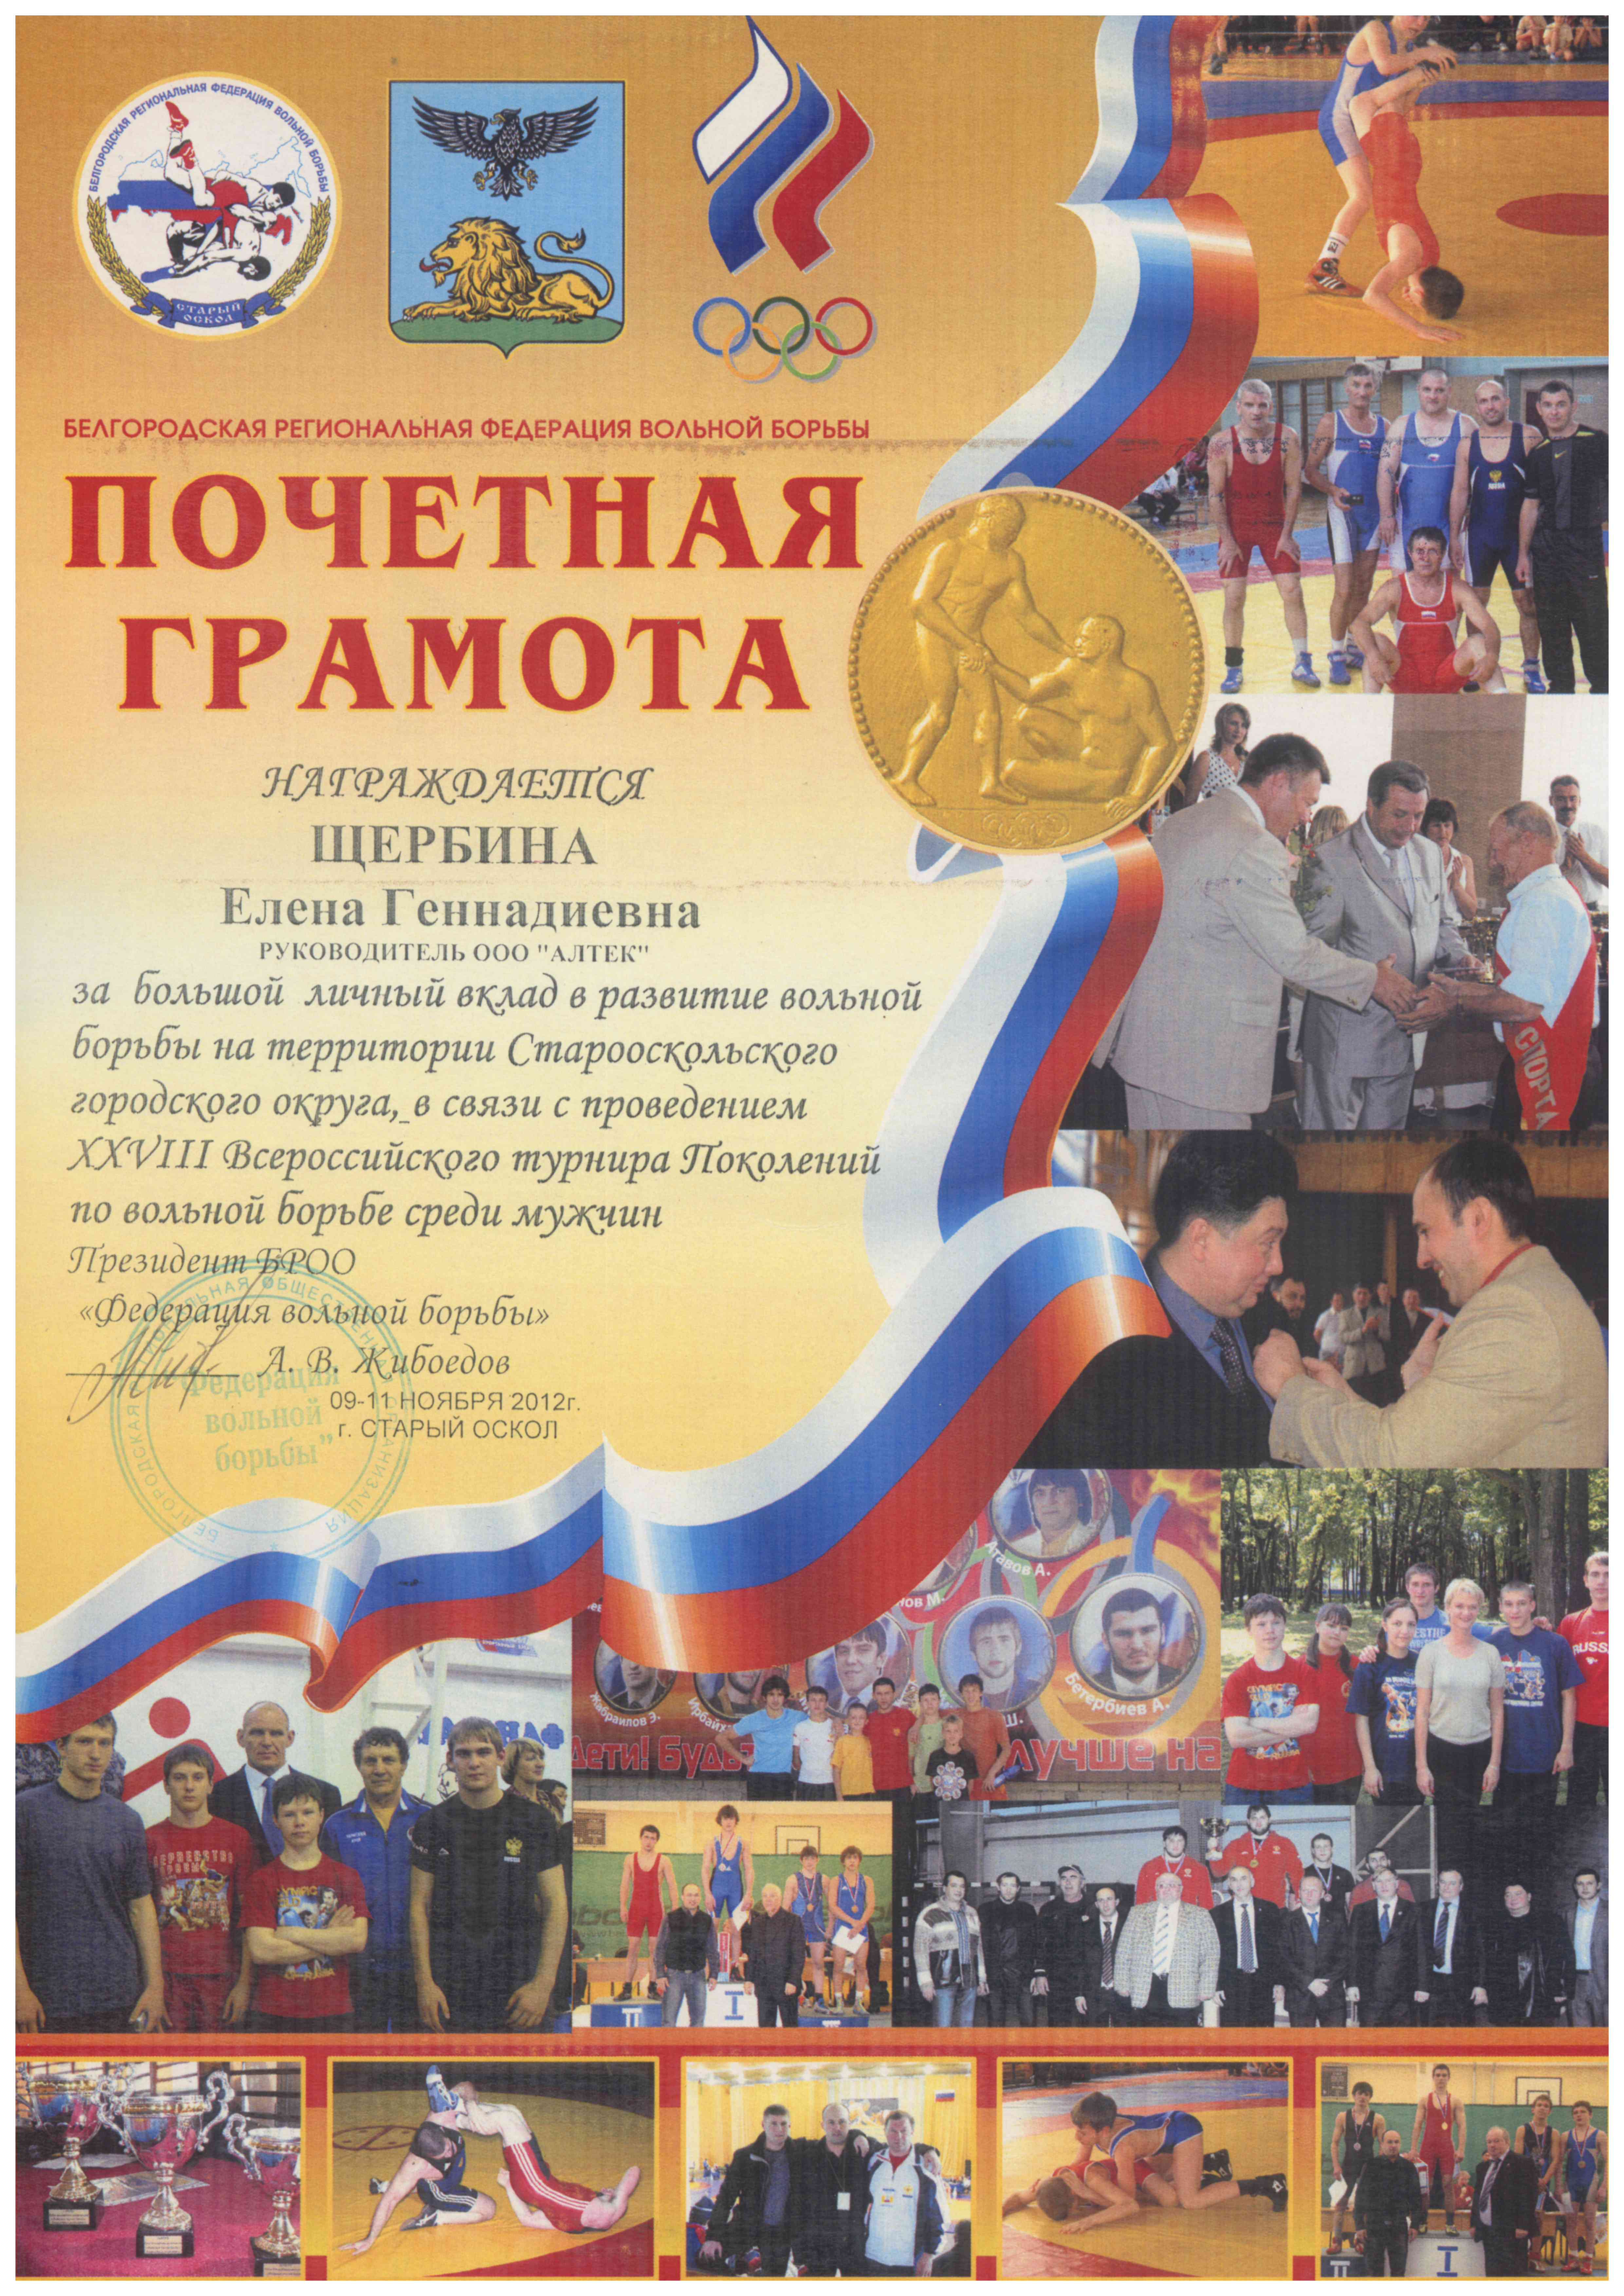 Почетная грамота от Белгородской региональной федерации вольной борьбы